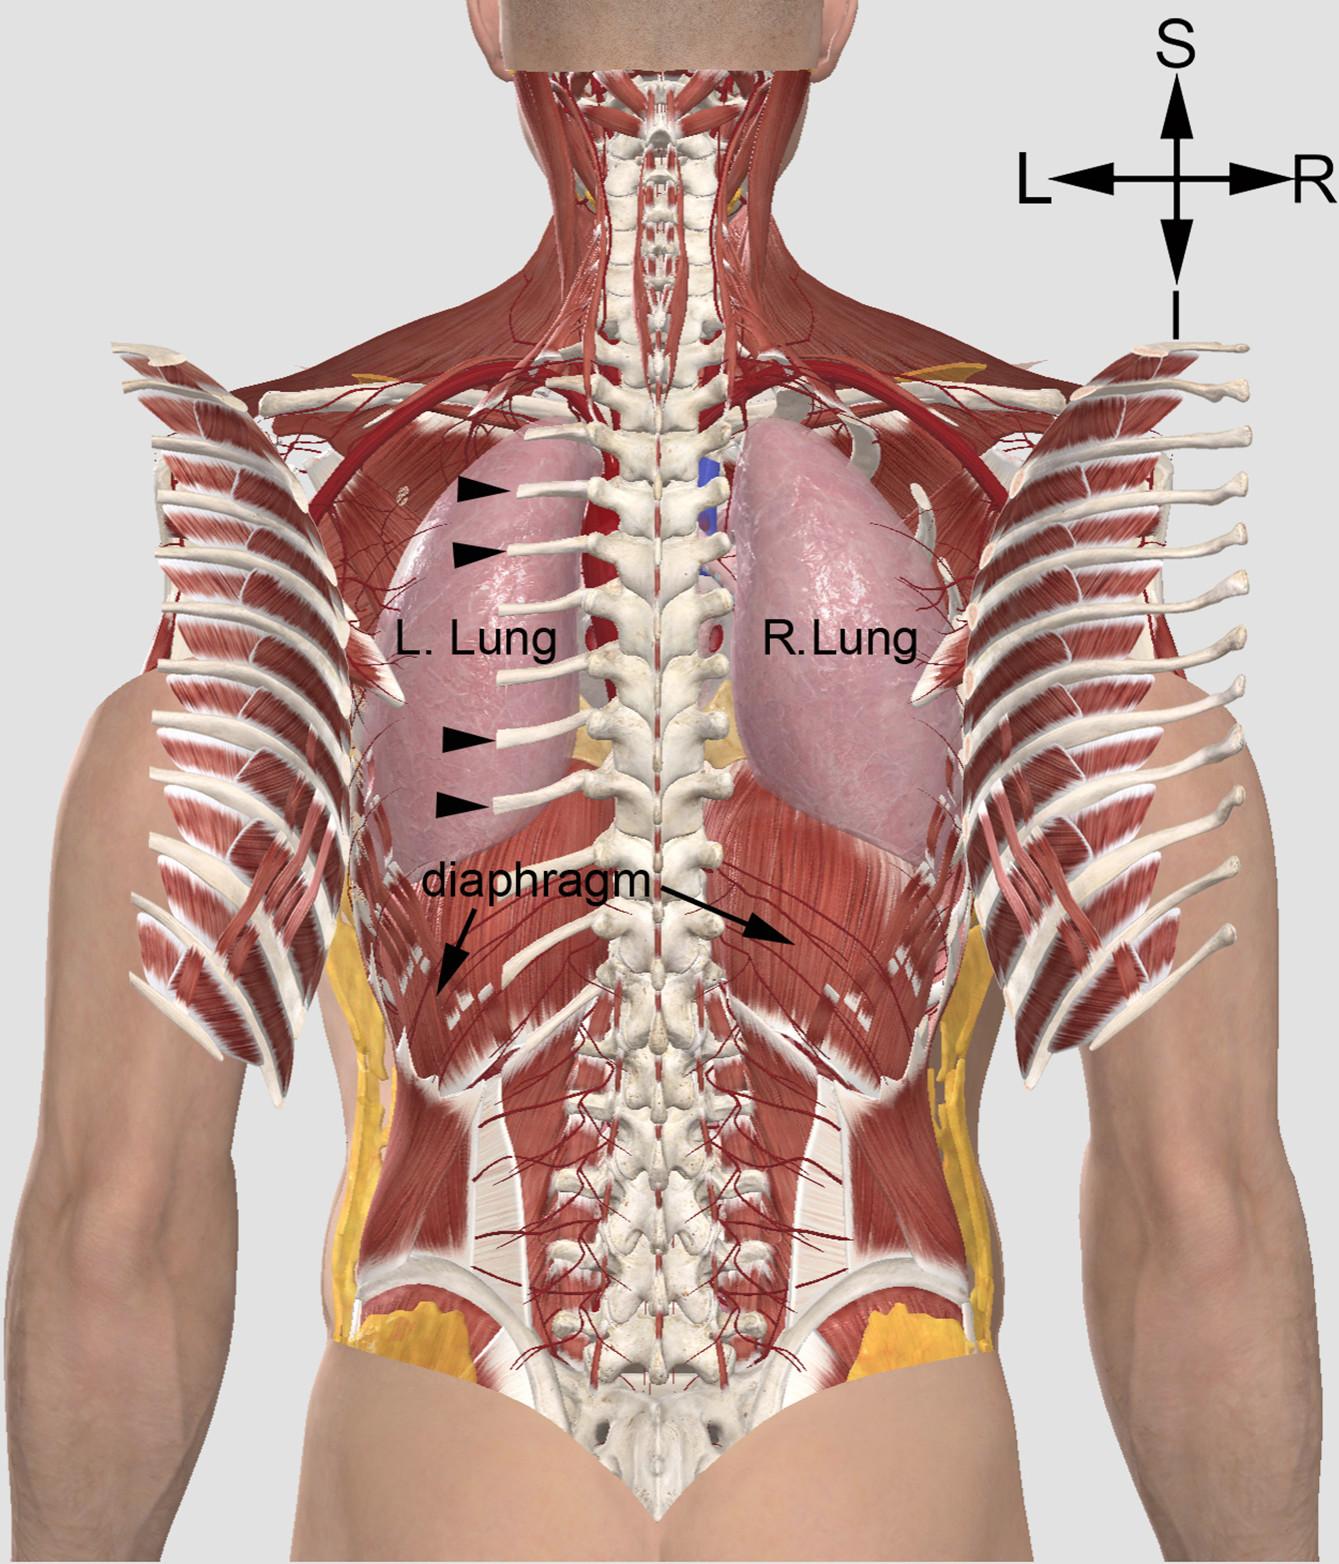 Vue du thorax avec 2 versions de fractures des côtes dans l'exécution du supplice de l'aigle de sang - Illustration: 3D4Medical - Luke John Murphy /Université d'Islande